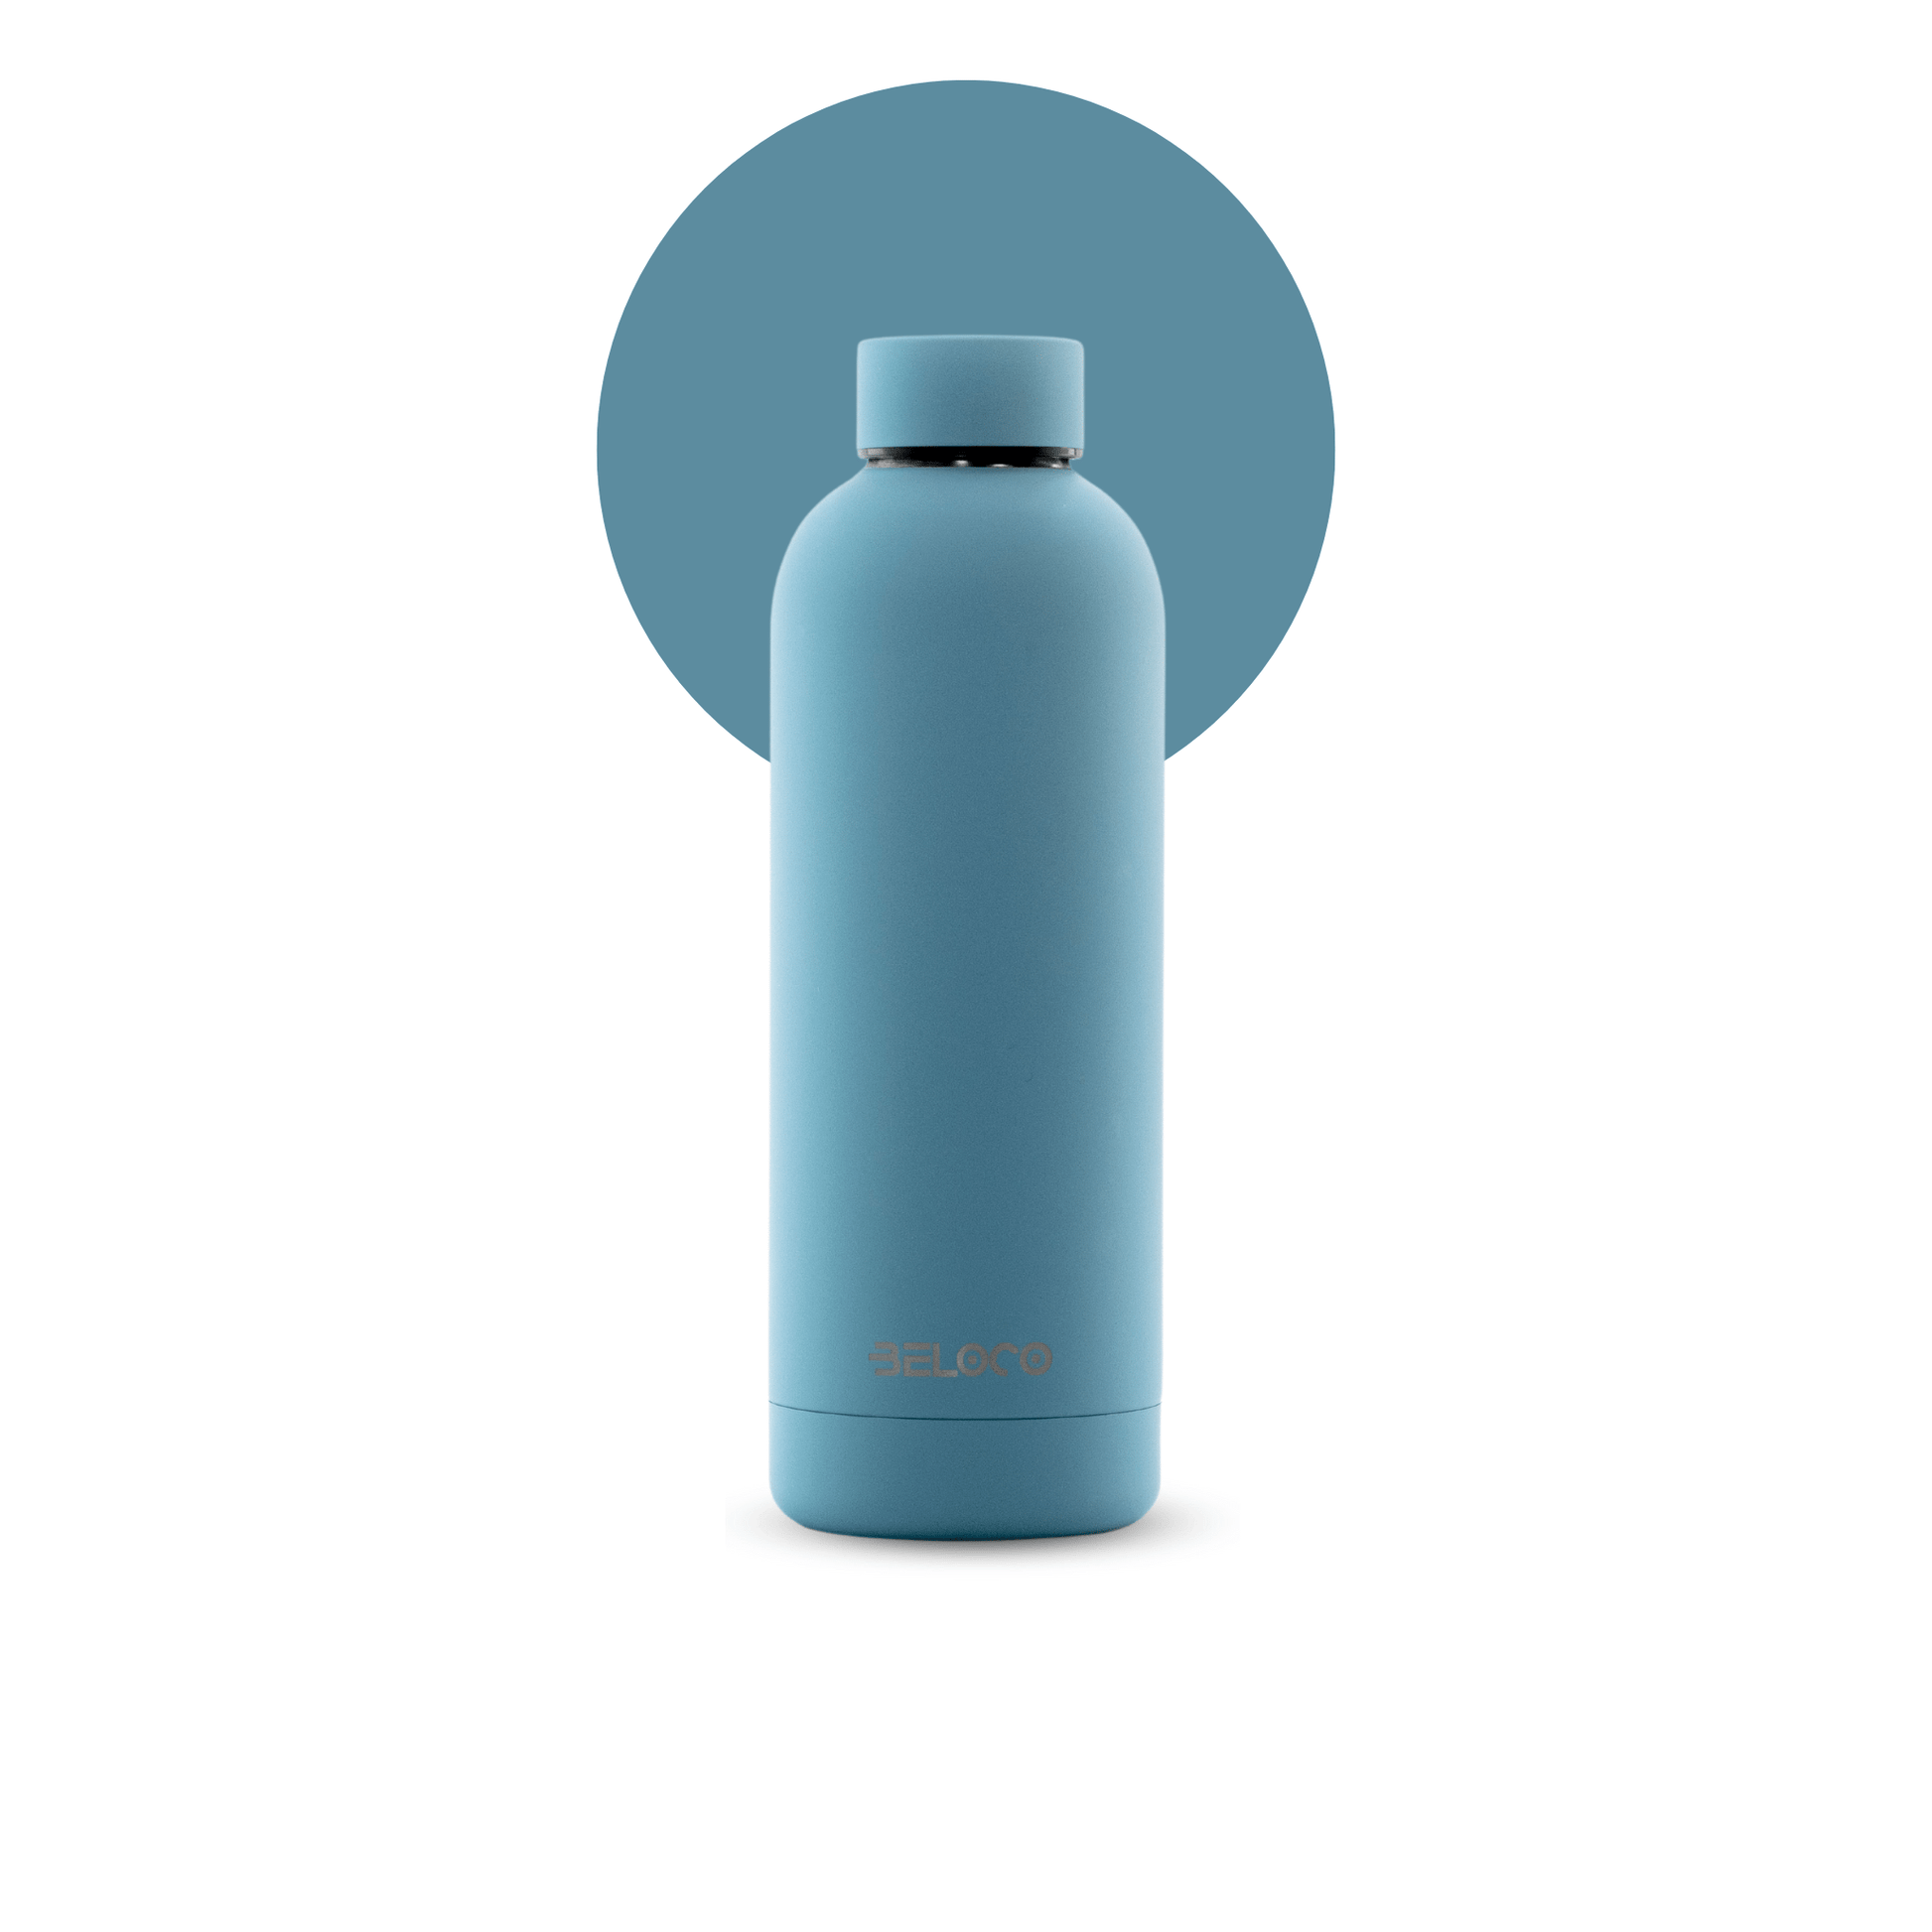 Classiq Blue water bottle - 500 ml - BeLoco